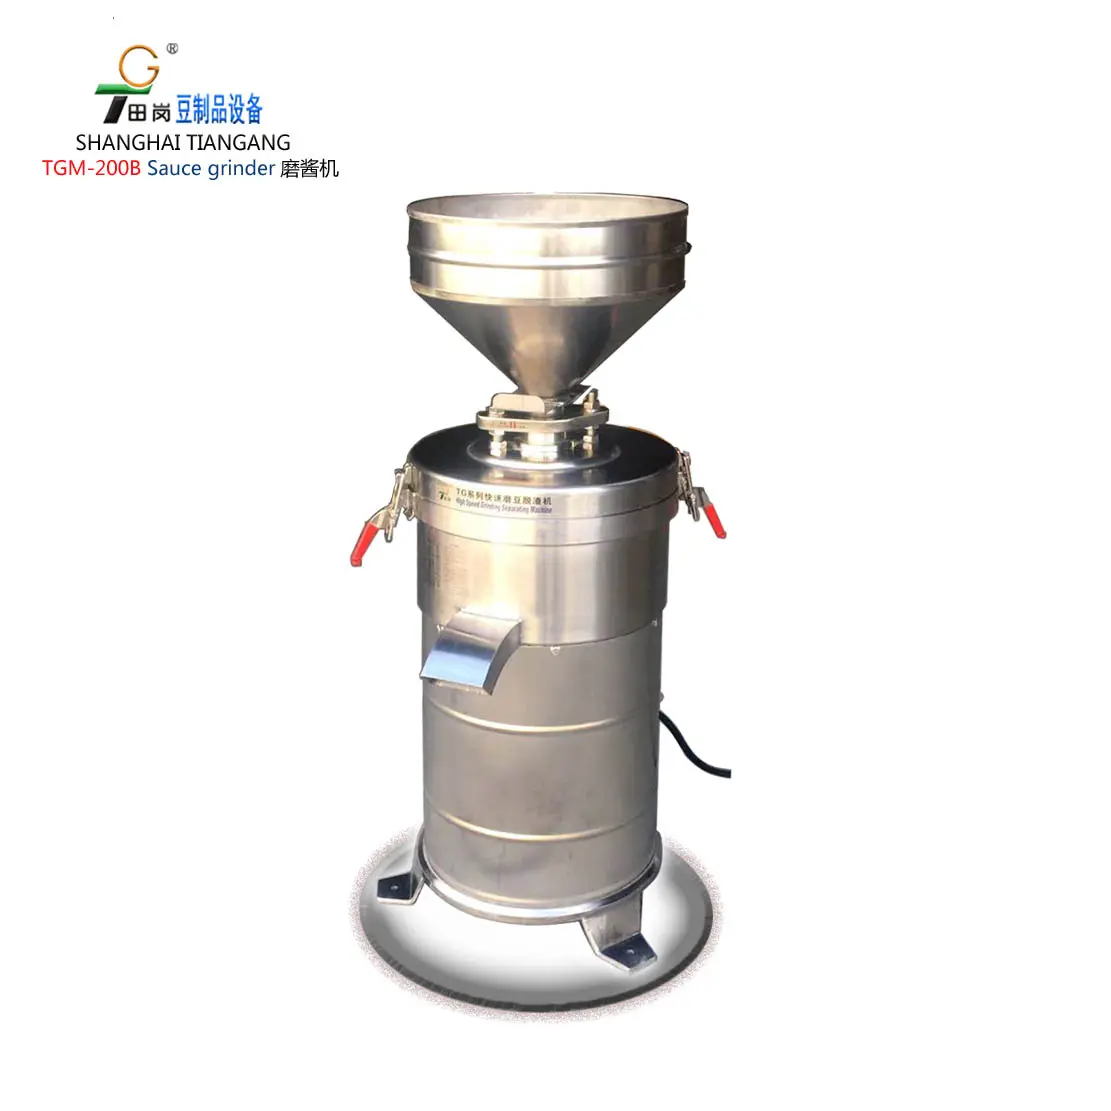 Пищевая шлифовальная машина TGM-200B каменная мельница/машина для кунжутного соуса